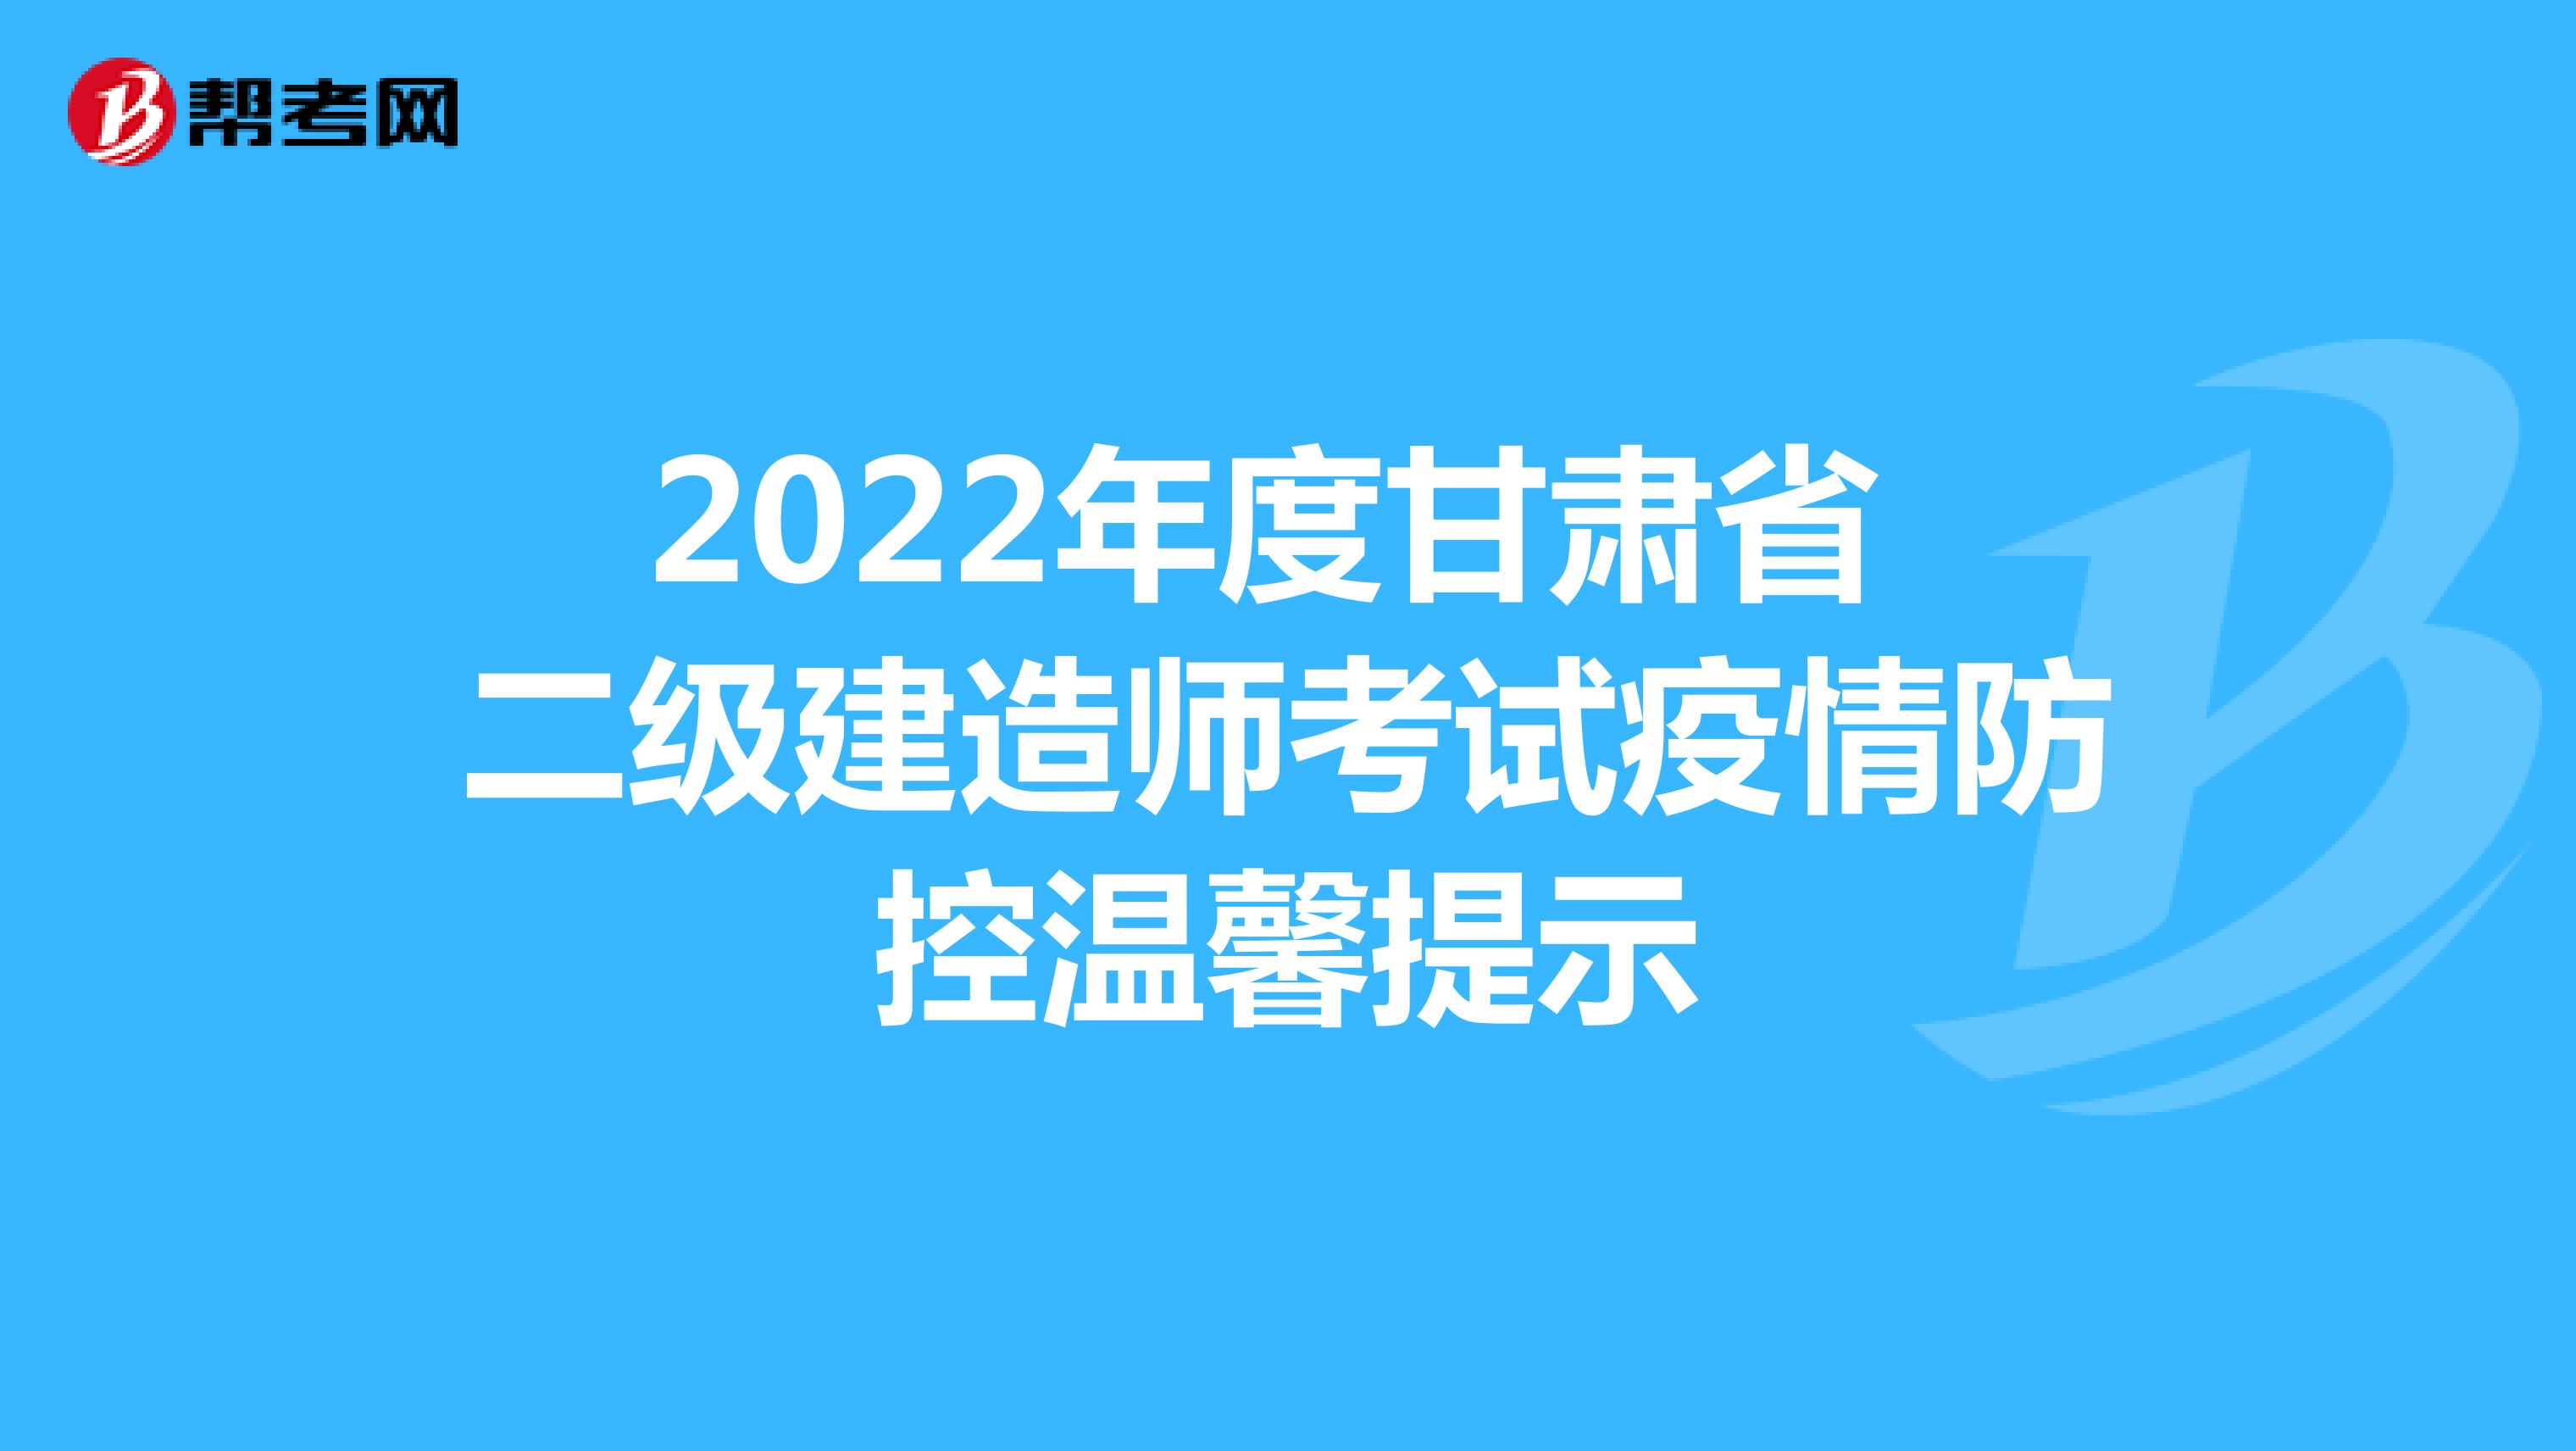 2022年度甘肃省二级建造师考试疫情防控温馨提示